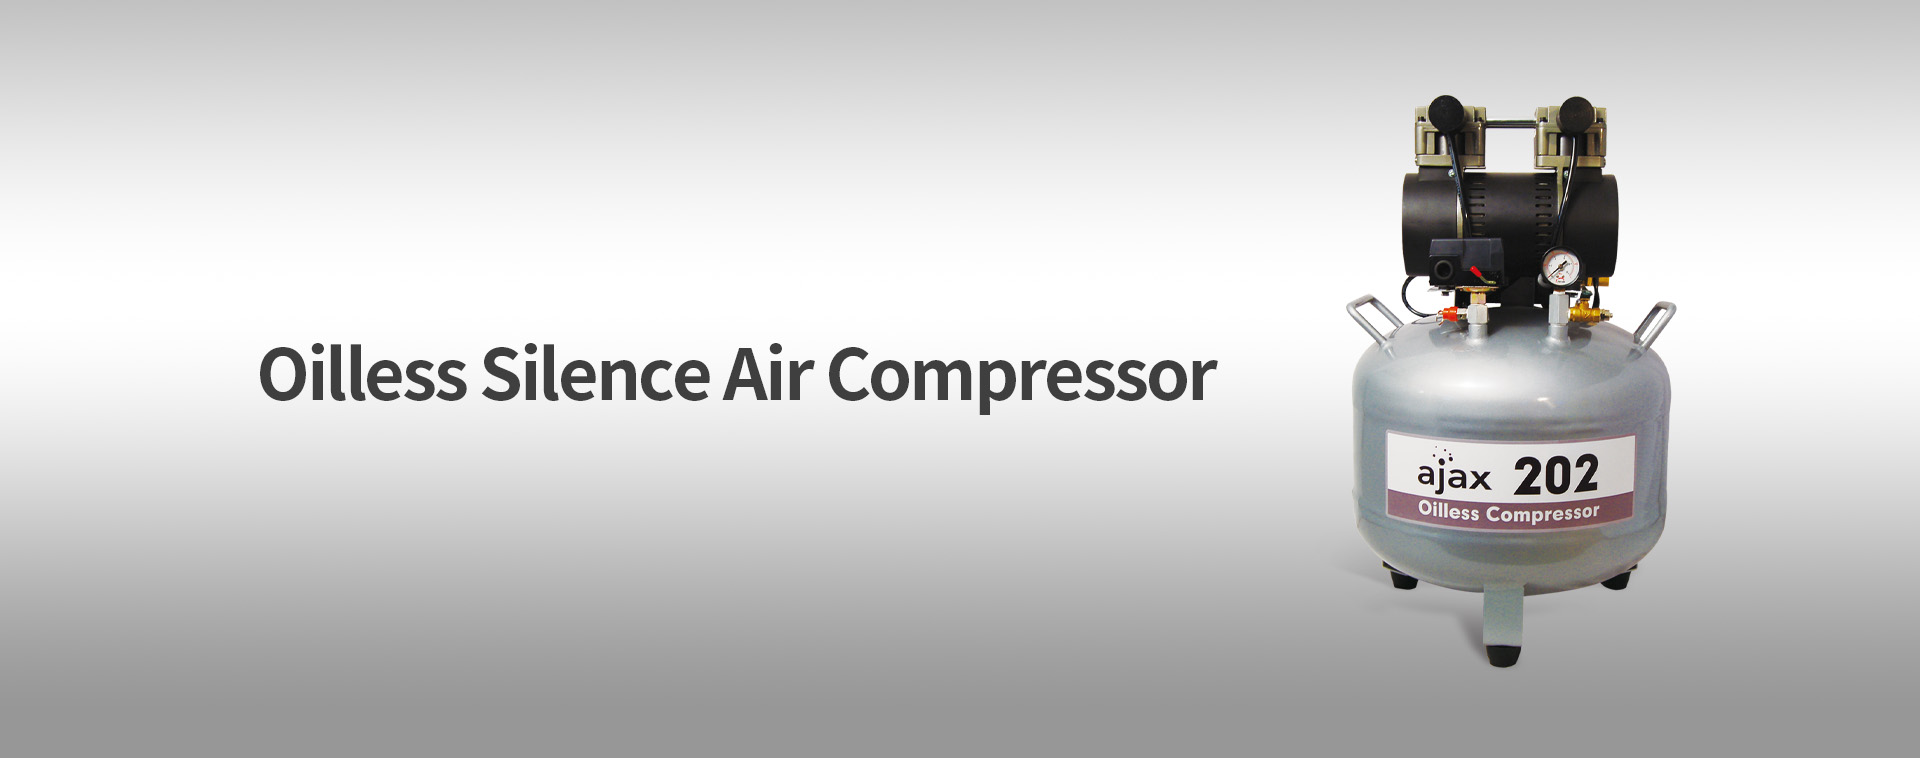 Compressor de ar AJAX 202